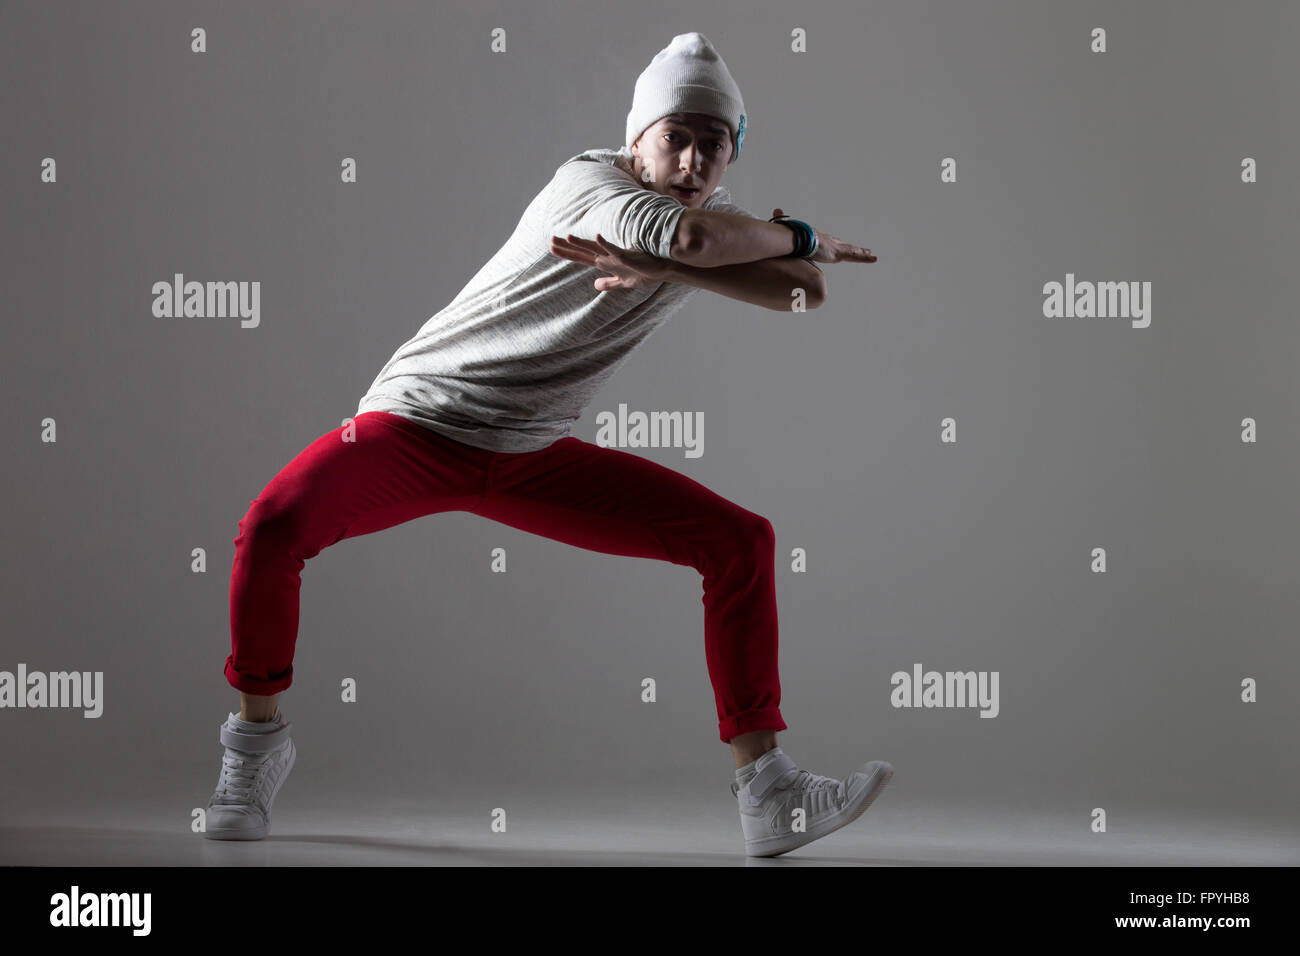 Retrato del bailarín moderno guy trabajando fuera vistiendo casual pantalones rojos y gorra. Estilo moderno de formación joven bailarina, bailando. Foto de stock